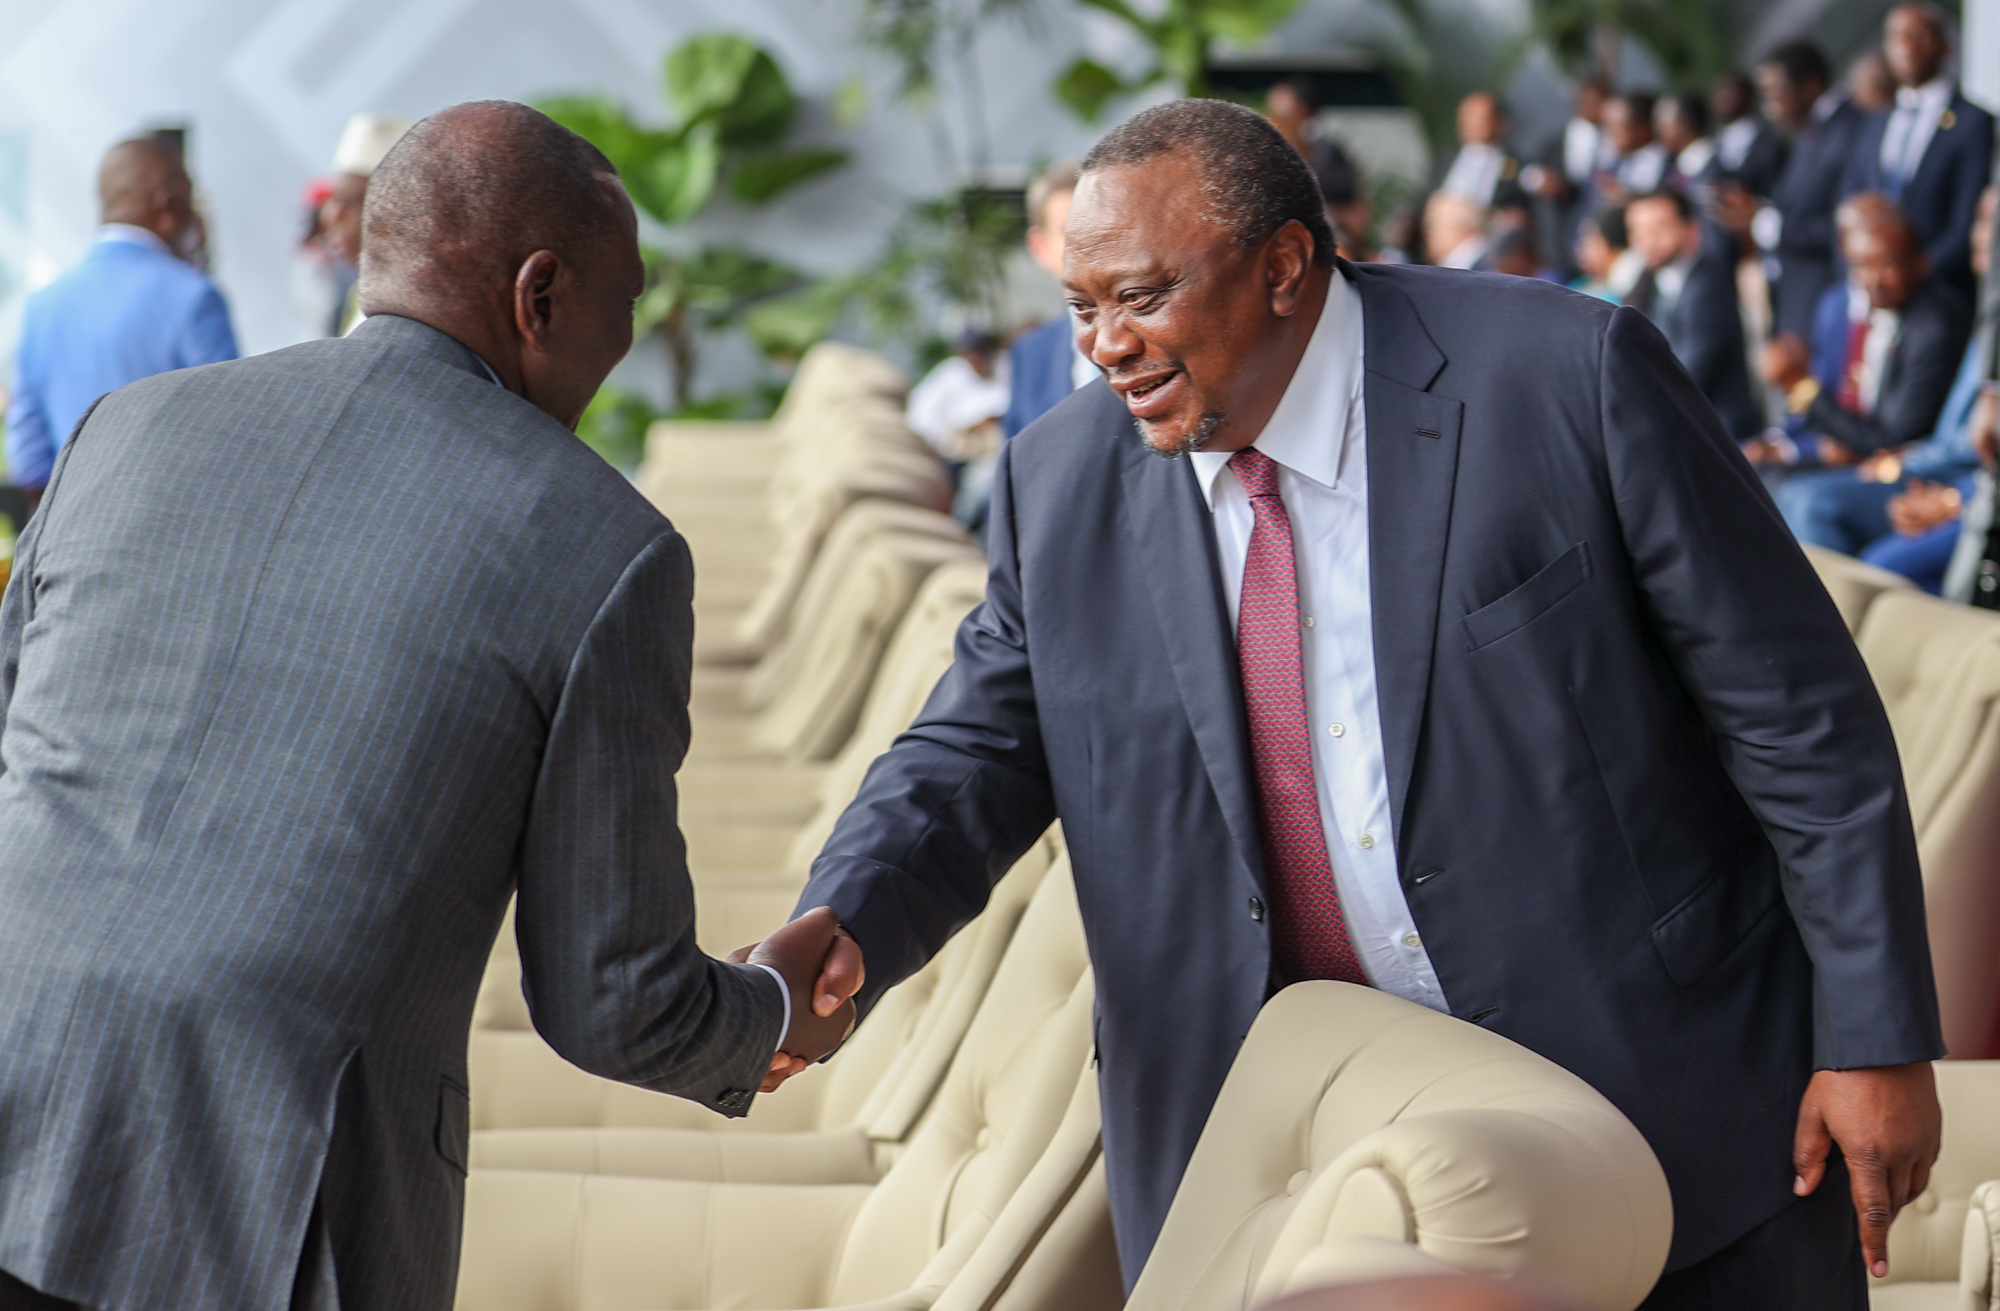 President William Ruto shaking hands with Uhuru Kenyatta in DRC.